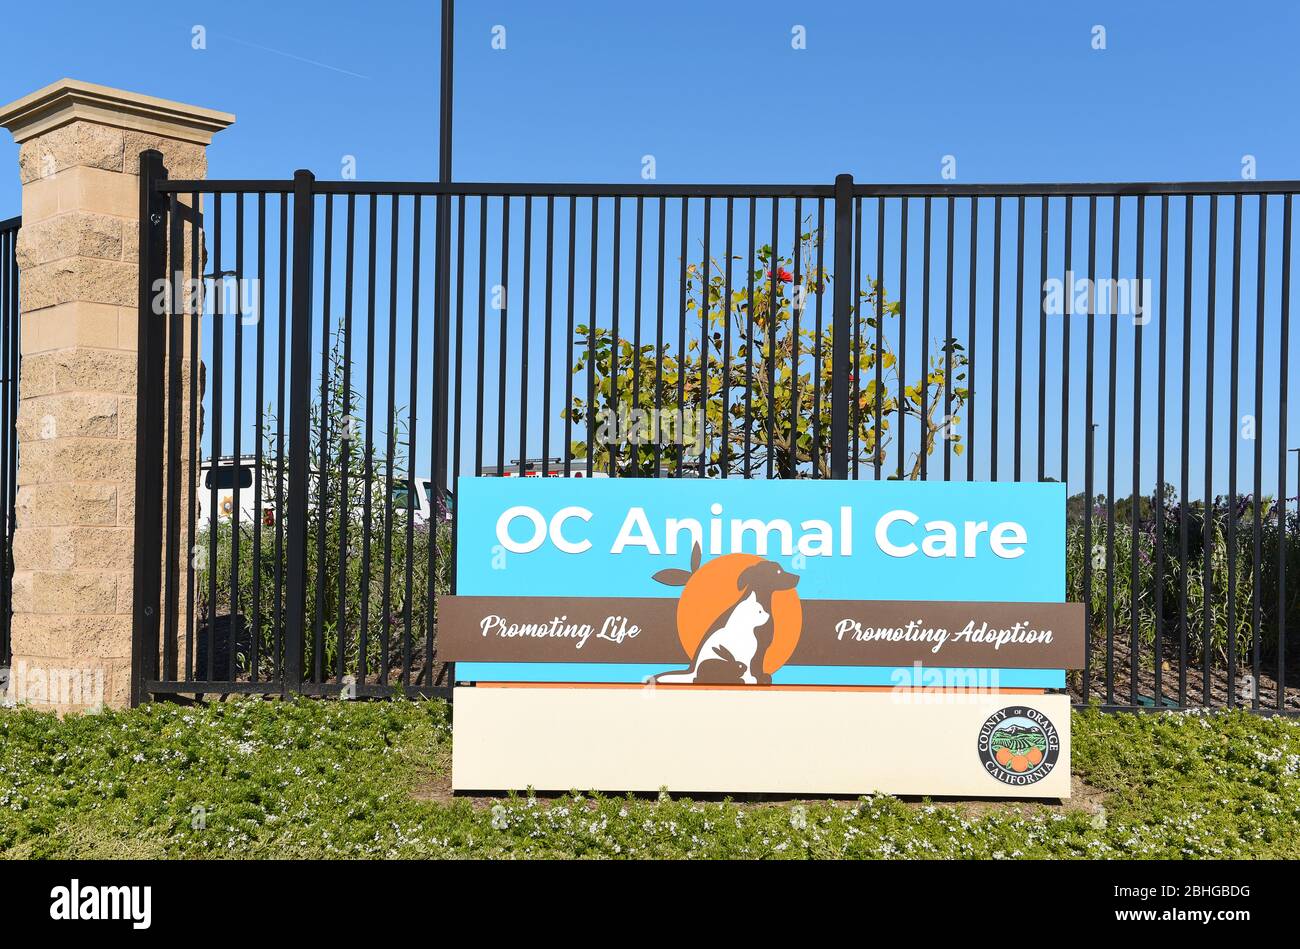 TUSTIN, CALIFORNIE - 25 AVRIL 2020: Signe pour l'installation de soins des animaux OC, un refuge pour animaux offrant des services d'adoption et vétérinaires. Banque D'Images